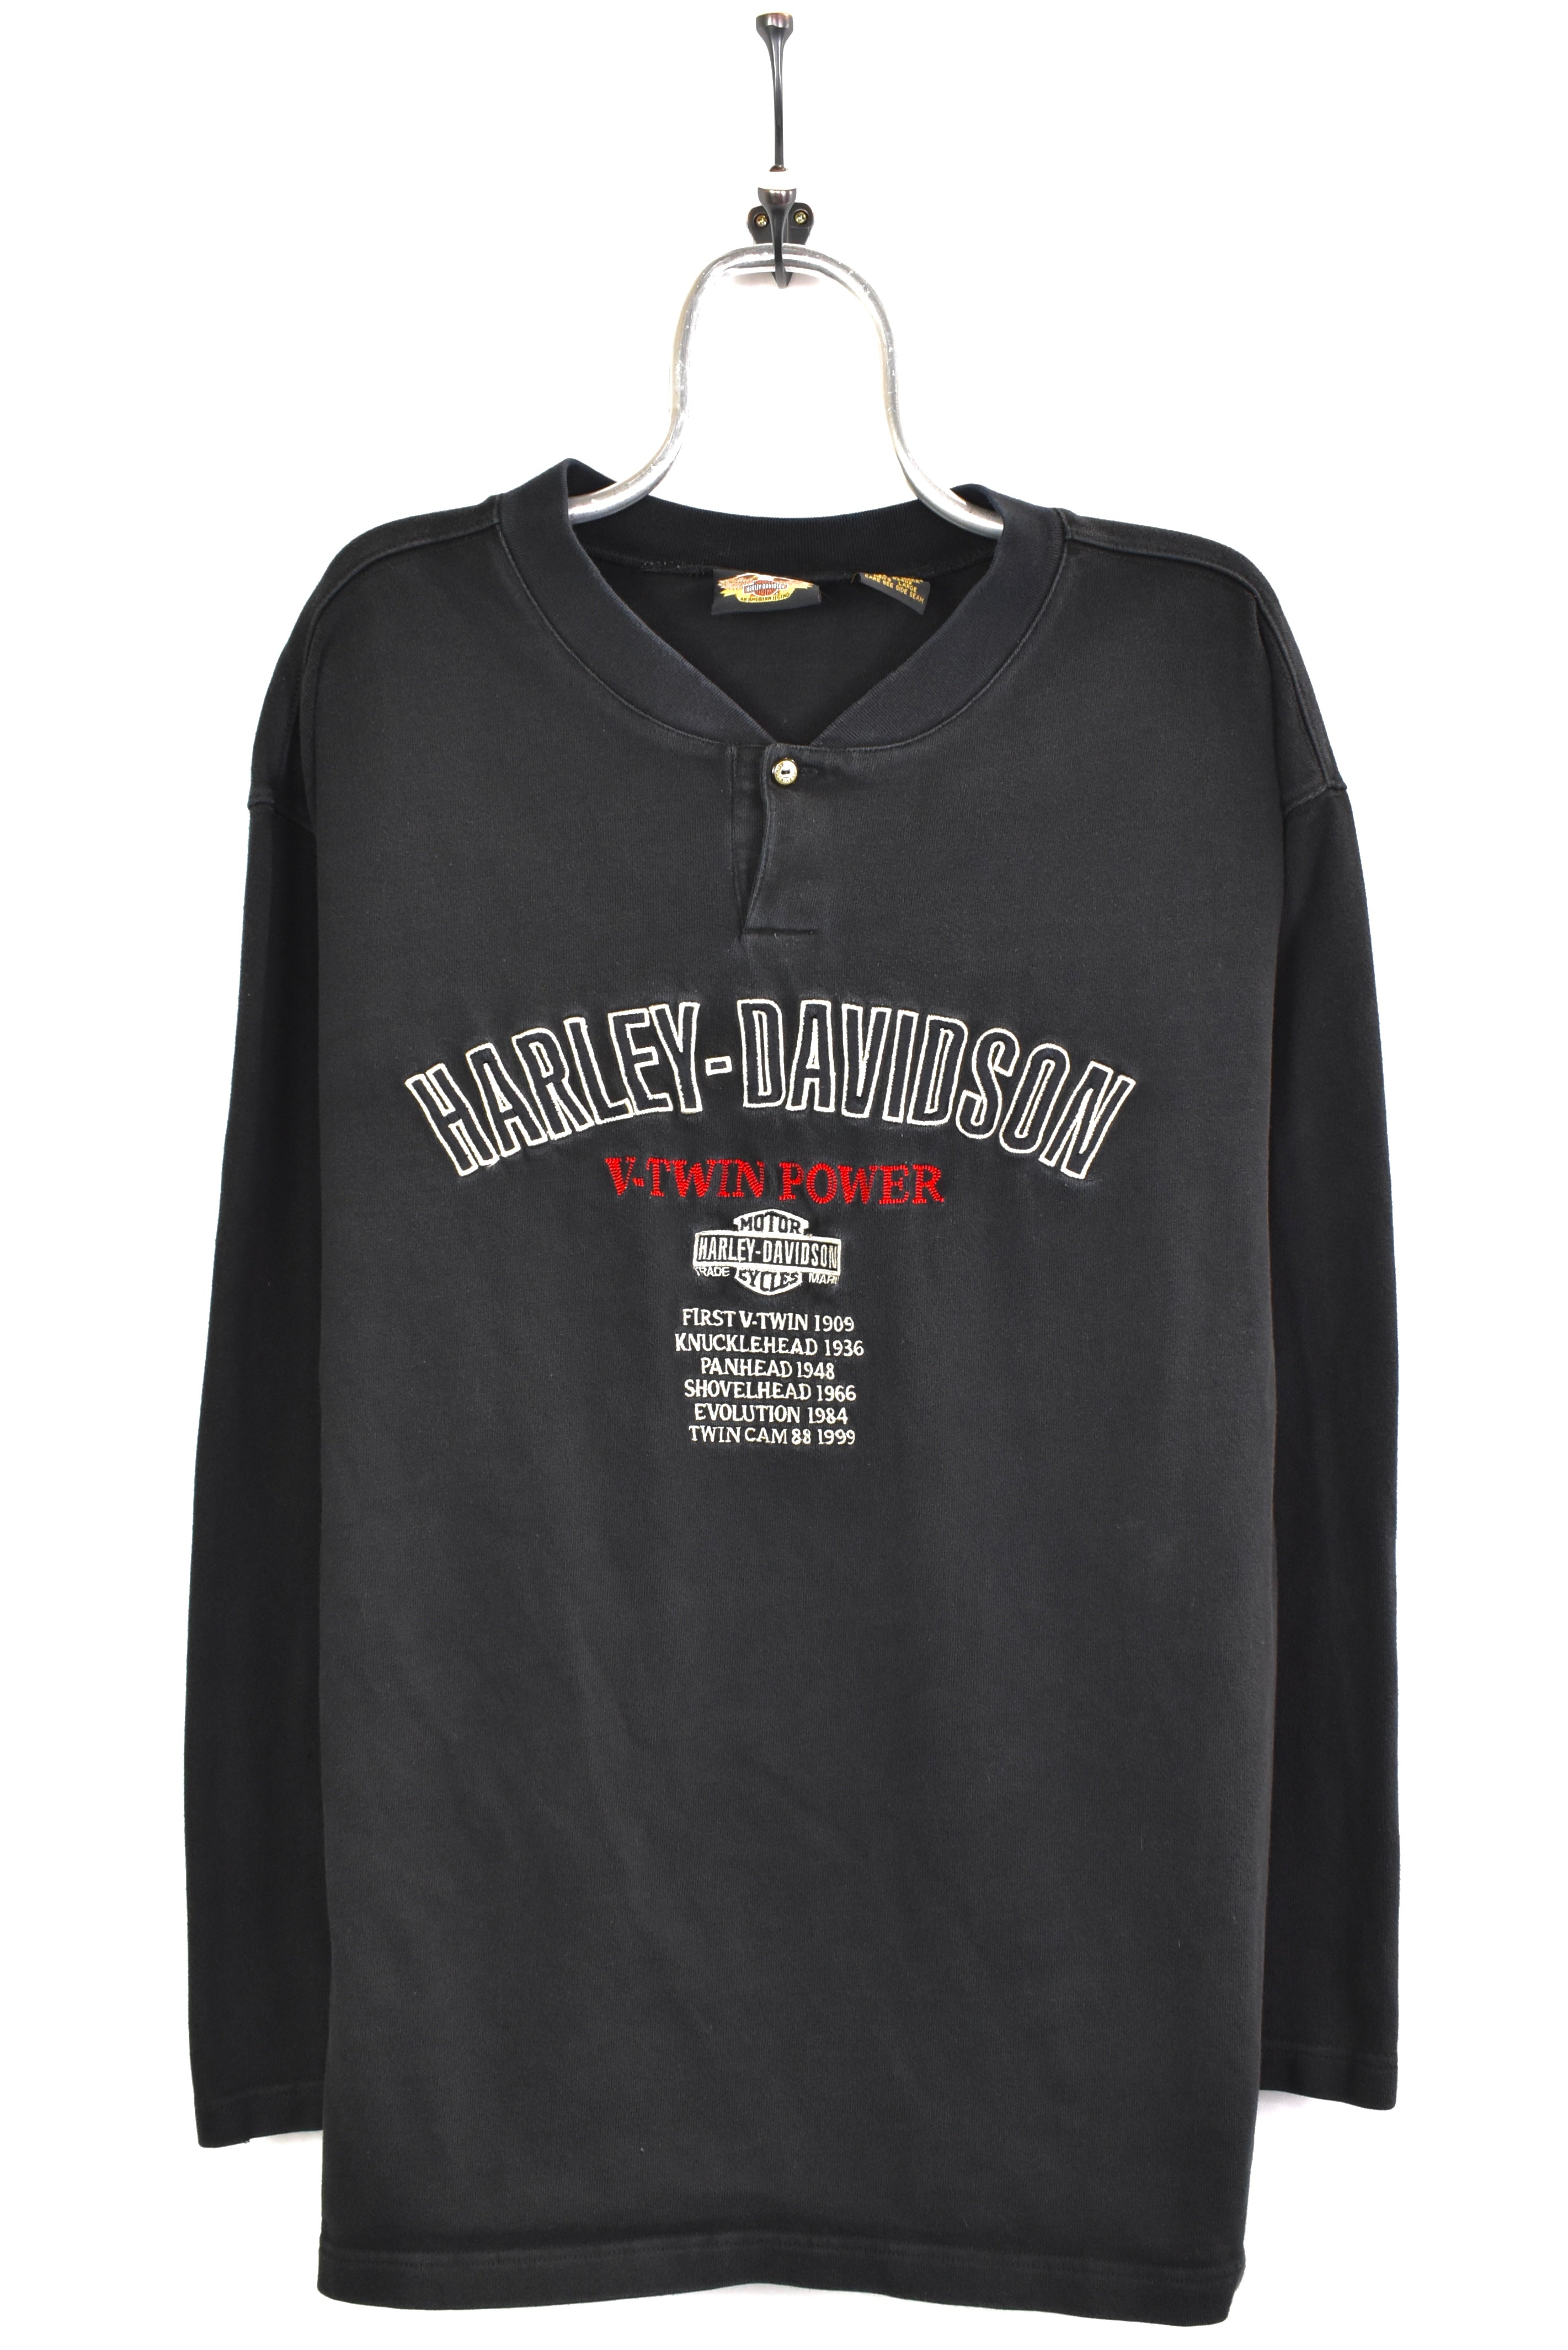 Vintage 1999 Harley Davidson embroidered black sweatshirt | Large HARLEY DAVIDSON